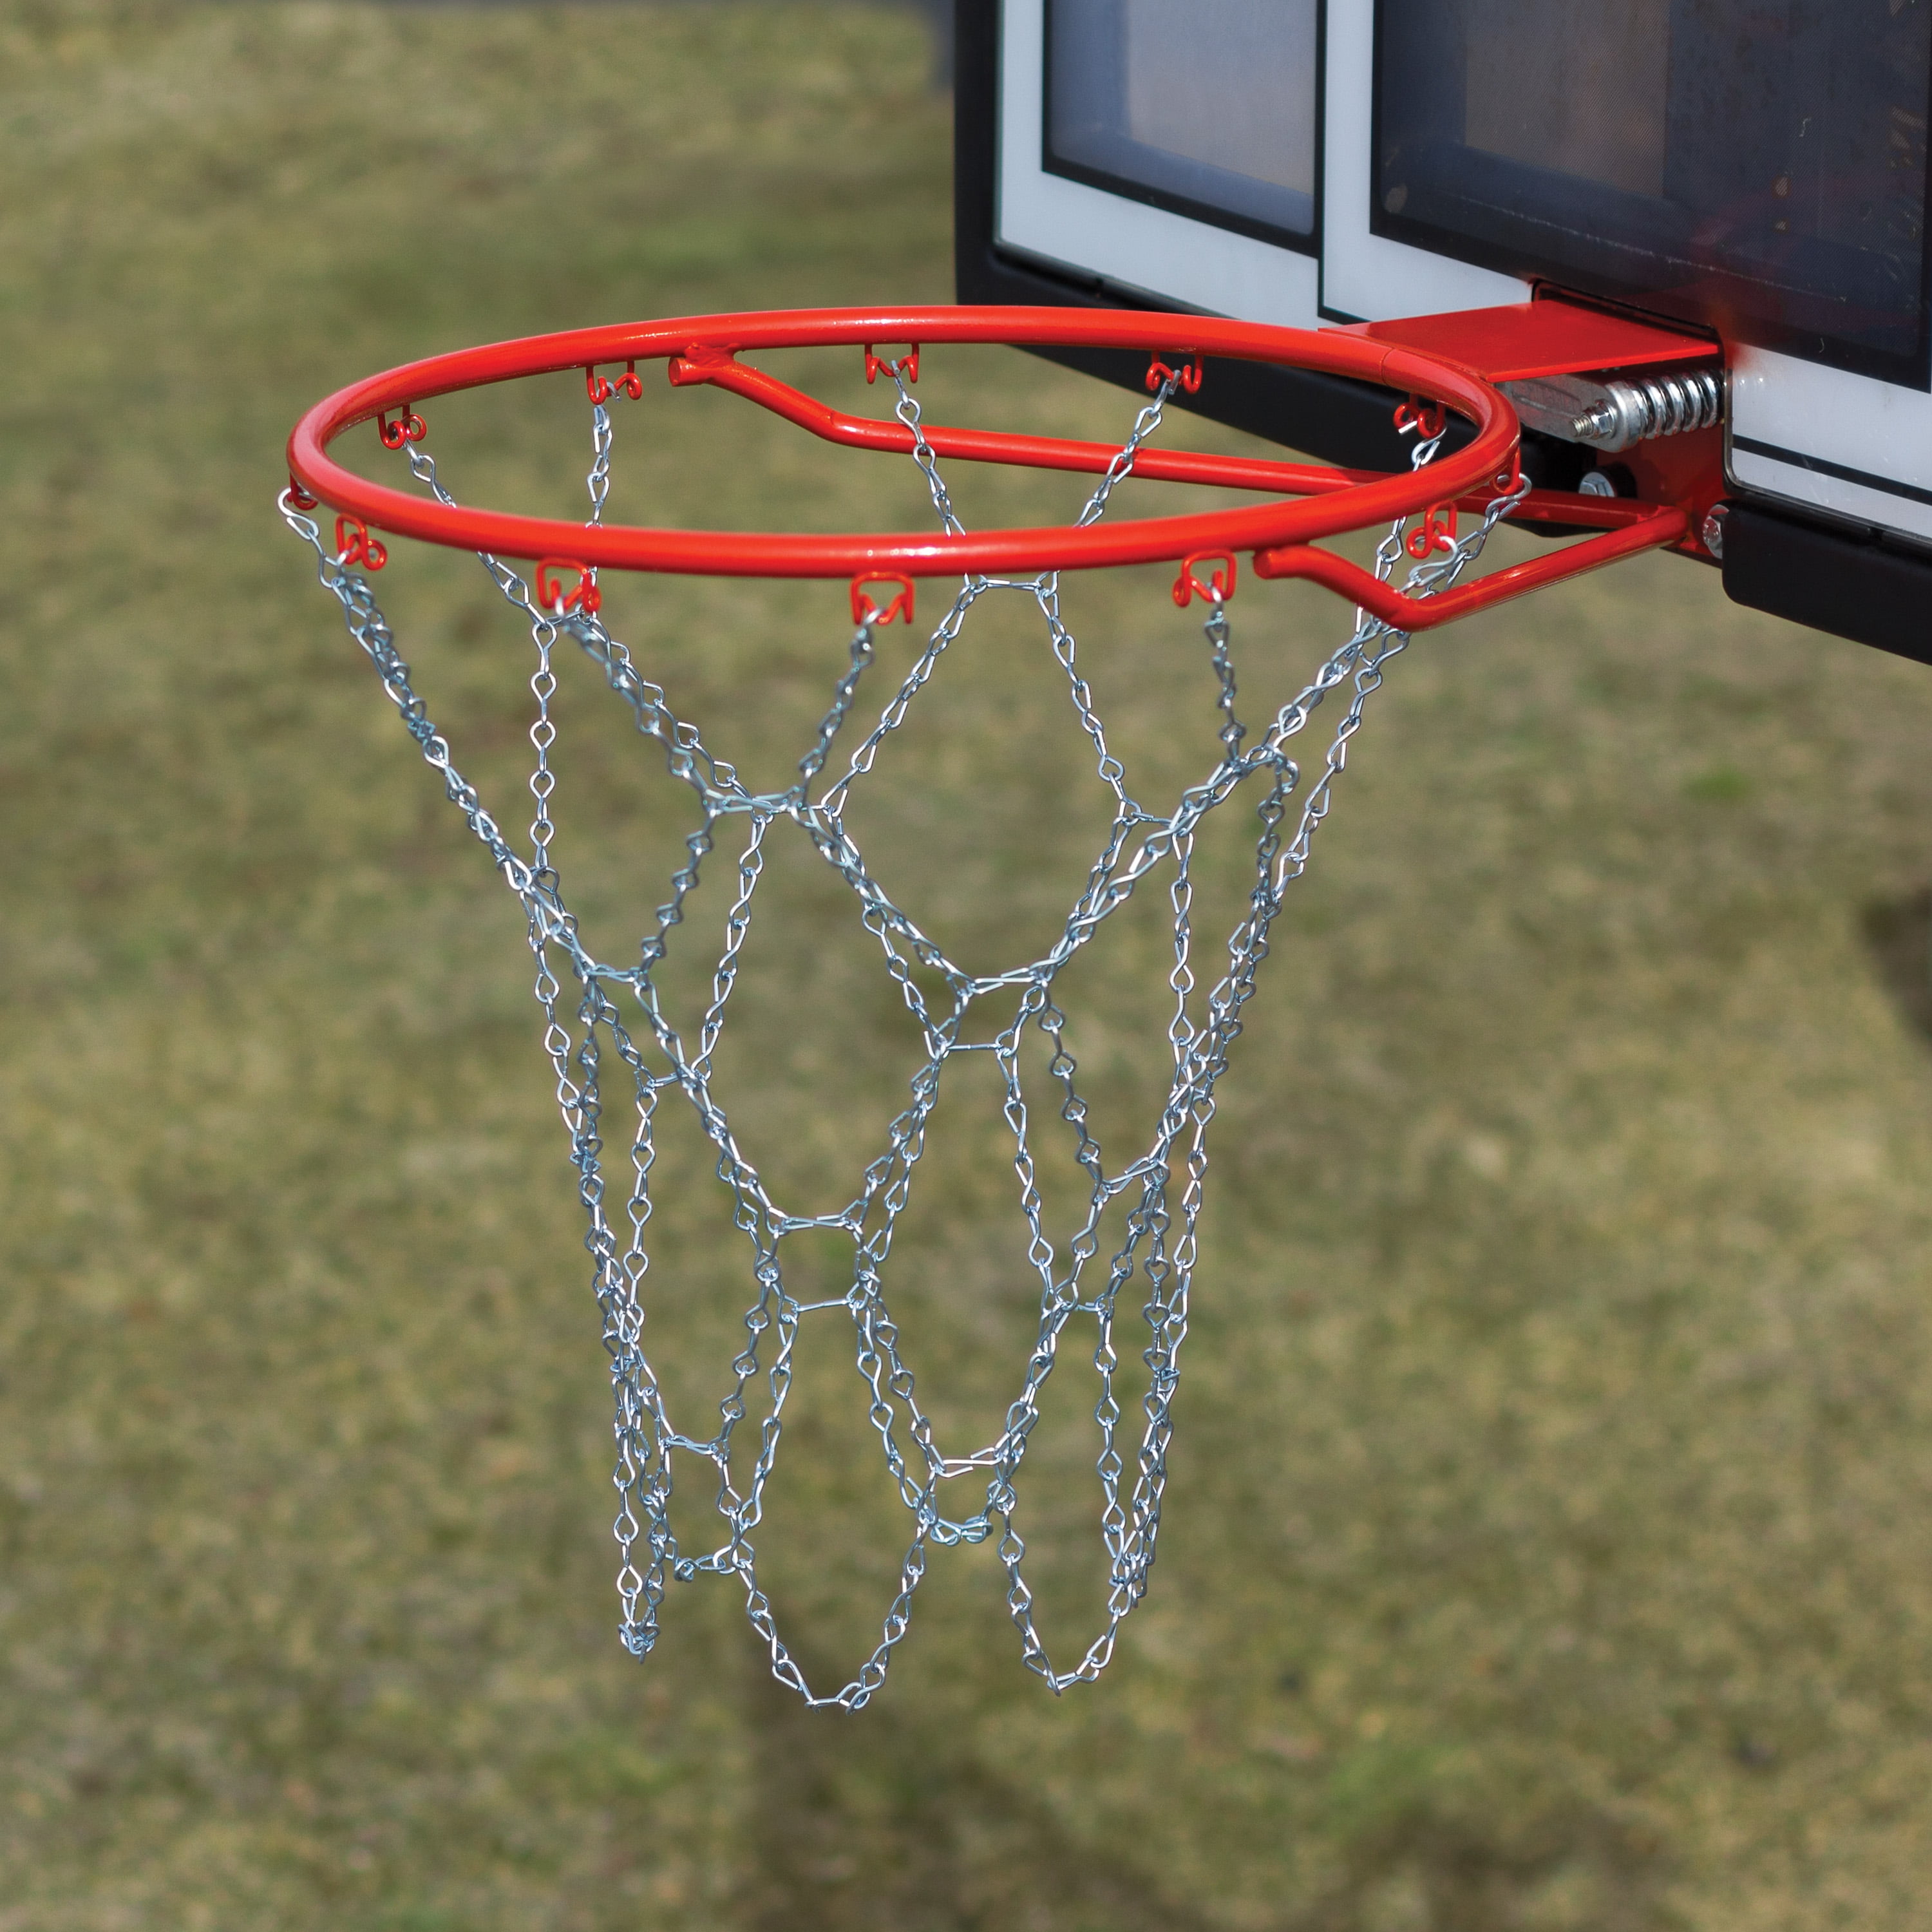 Basketball Steel Chain Net Hoop Heavy Duty Sports Galvanized Easy Metal Best New 